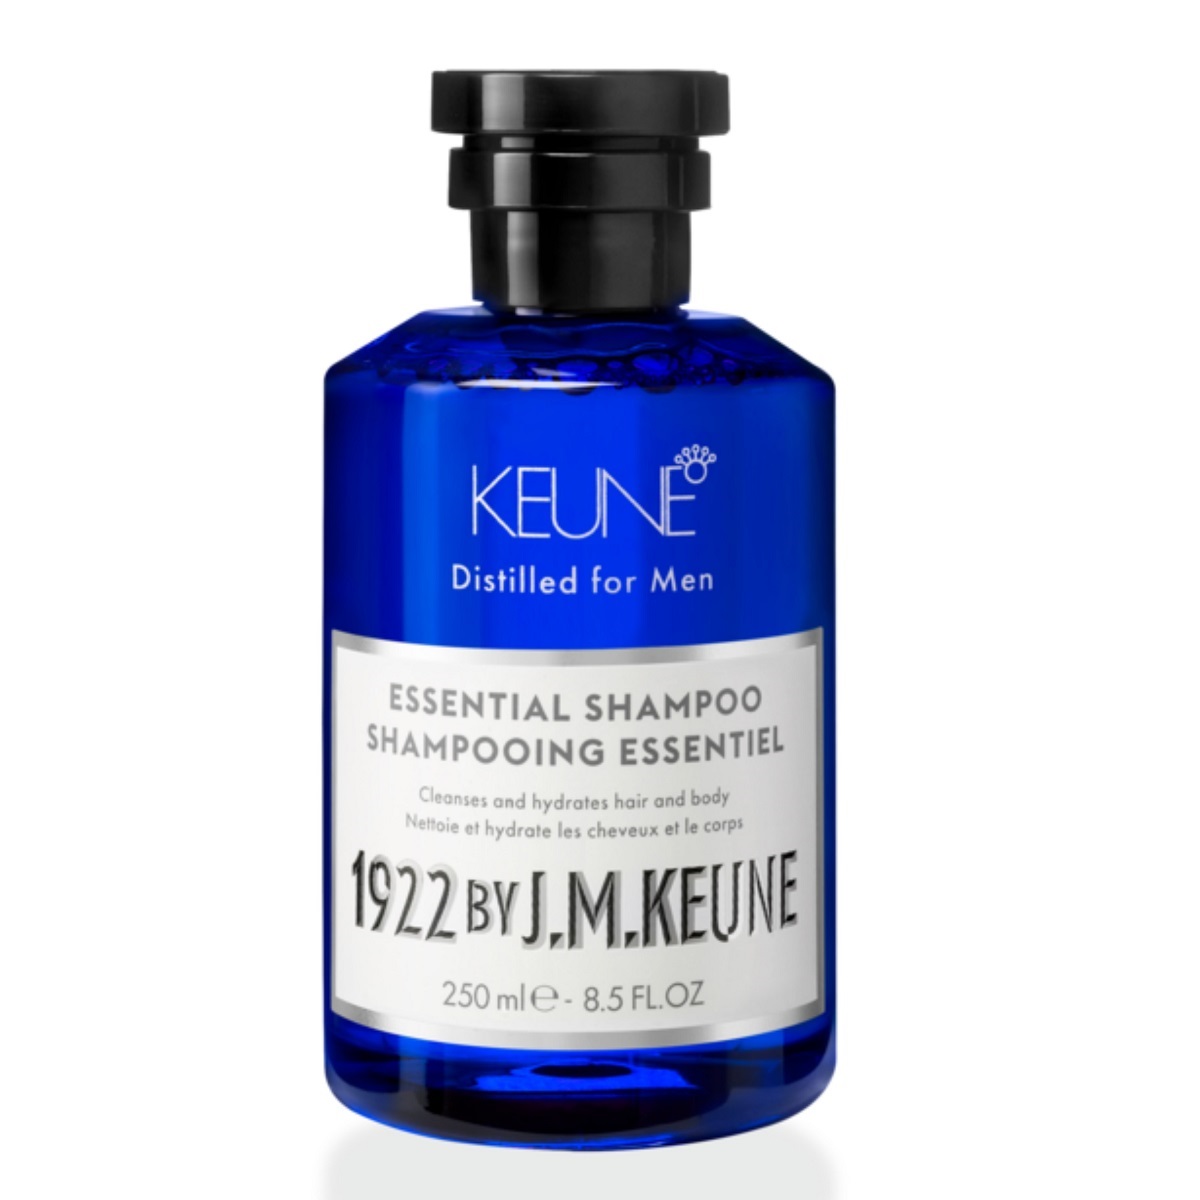 Keune Универсальный шампунь для волос и тела Essential Shampoo, 250 мл (Keune, 1922 by J.M. Keune) keune универсальный шампунь для волос и тела 1922 essential shampoo 50 мл